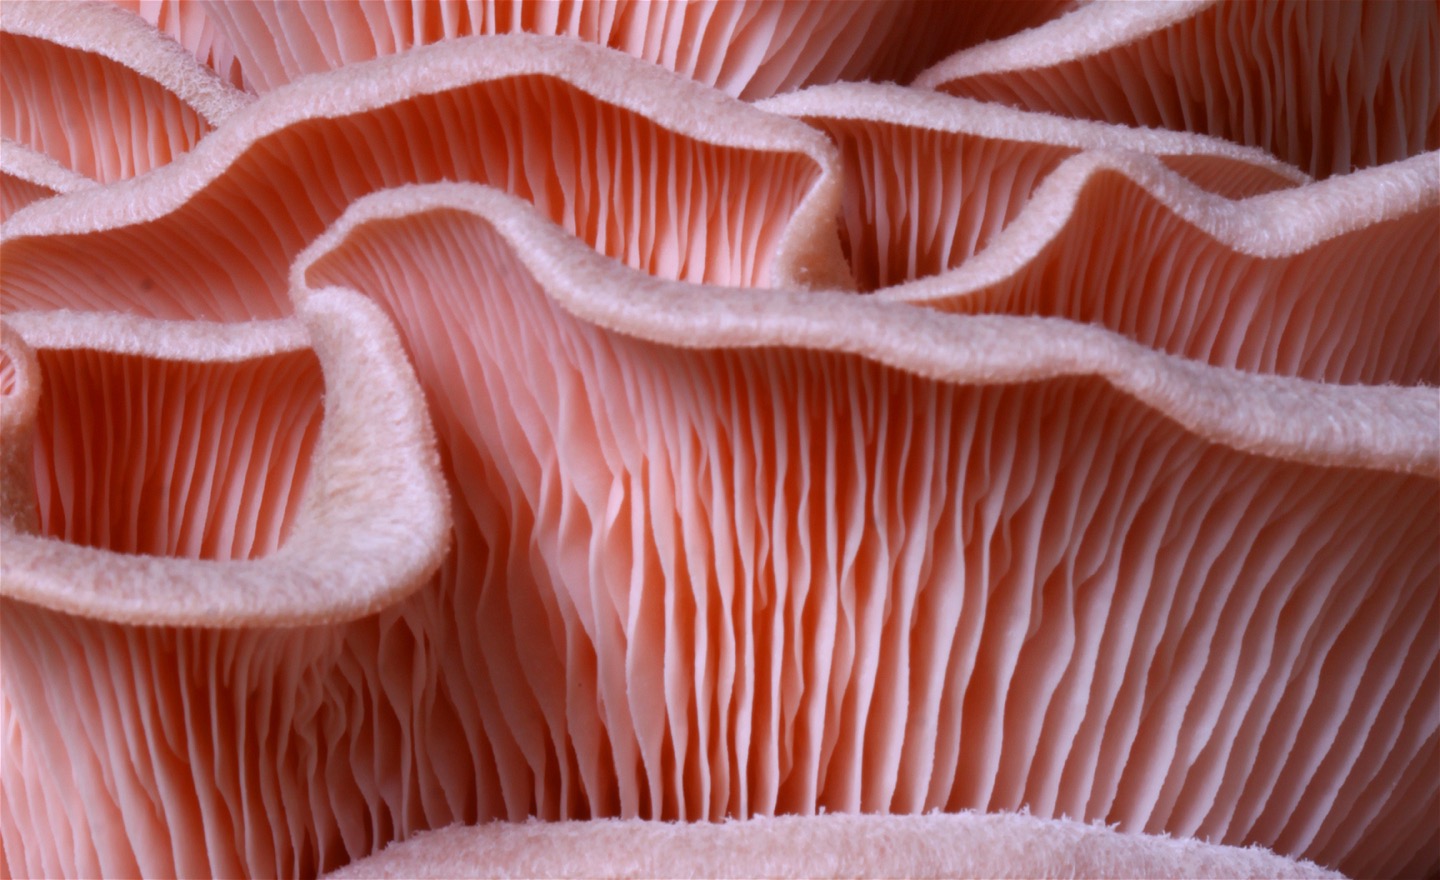 Närbild på en klunga rosa svampar med mycket skivlingar.